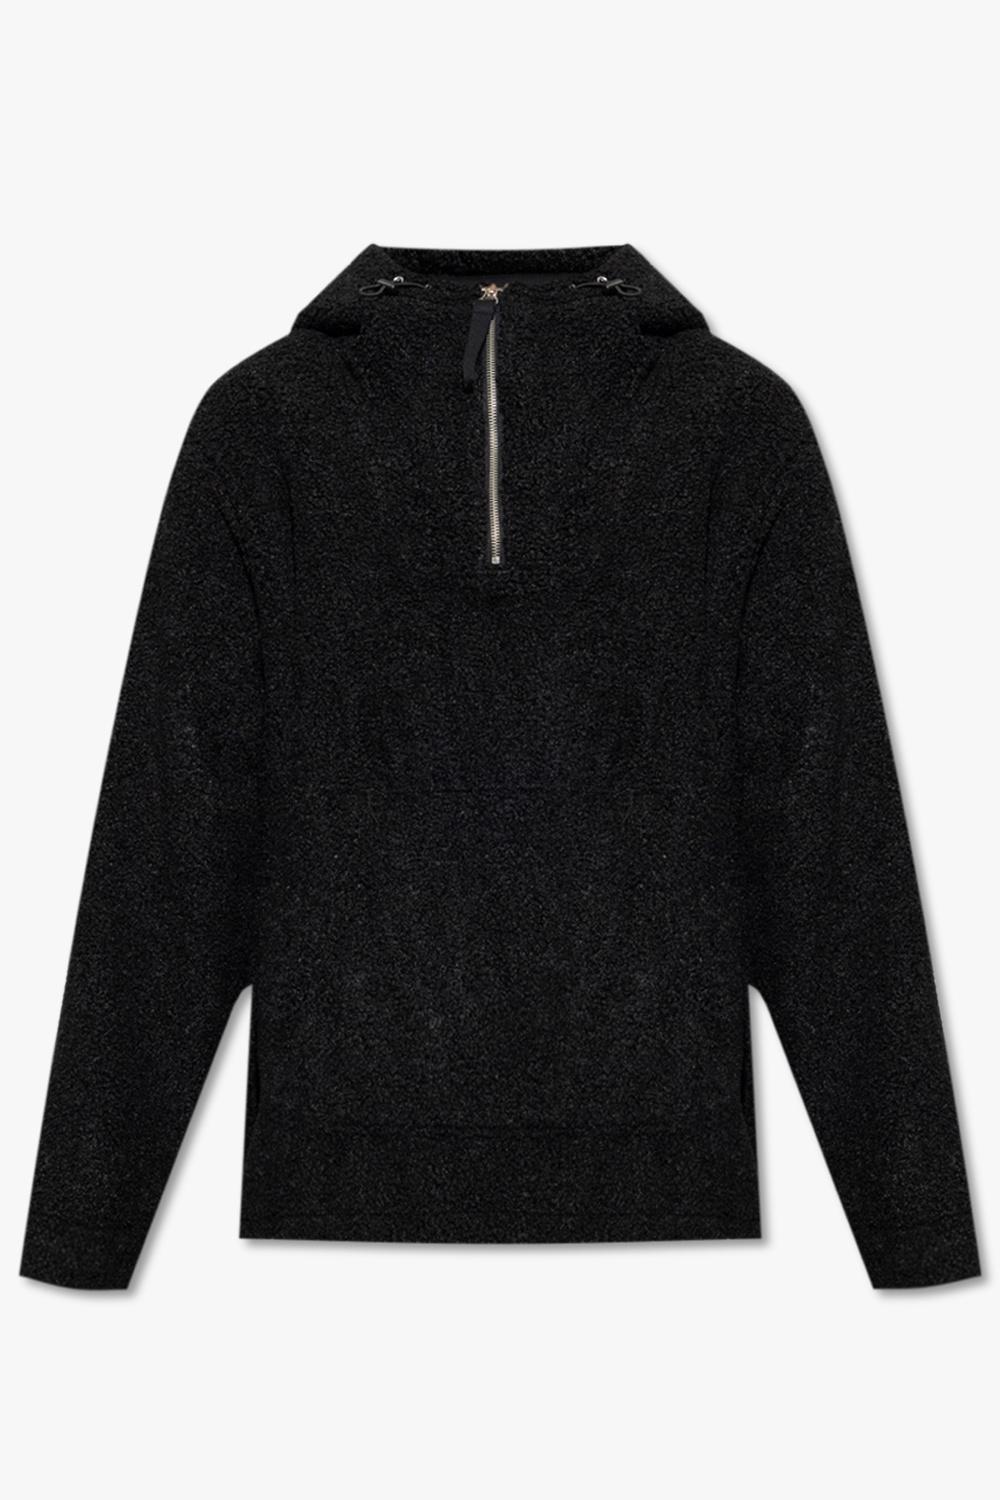 Helmut Lang Textured hoodie